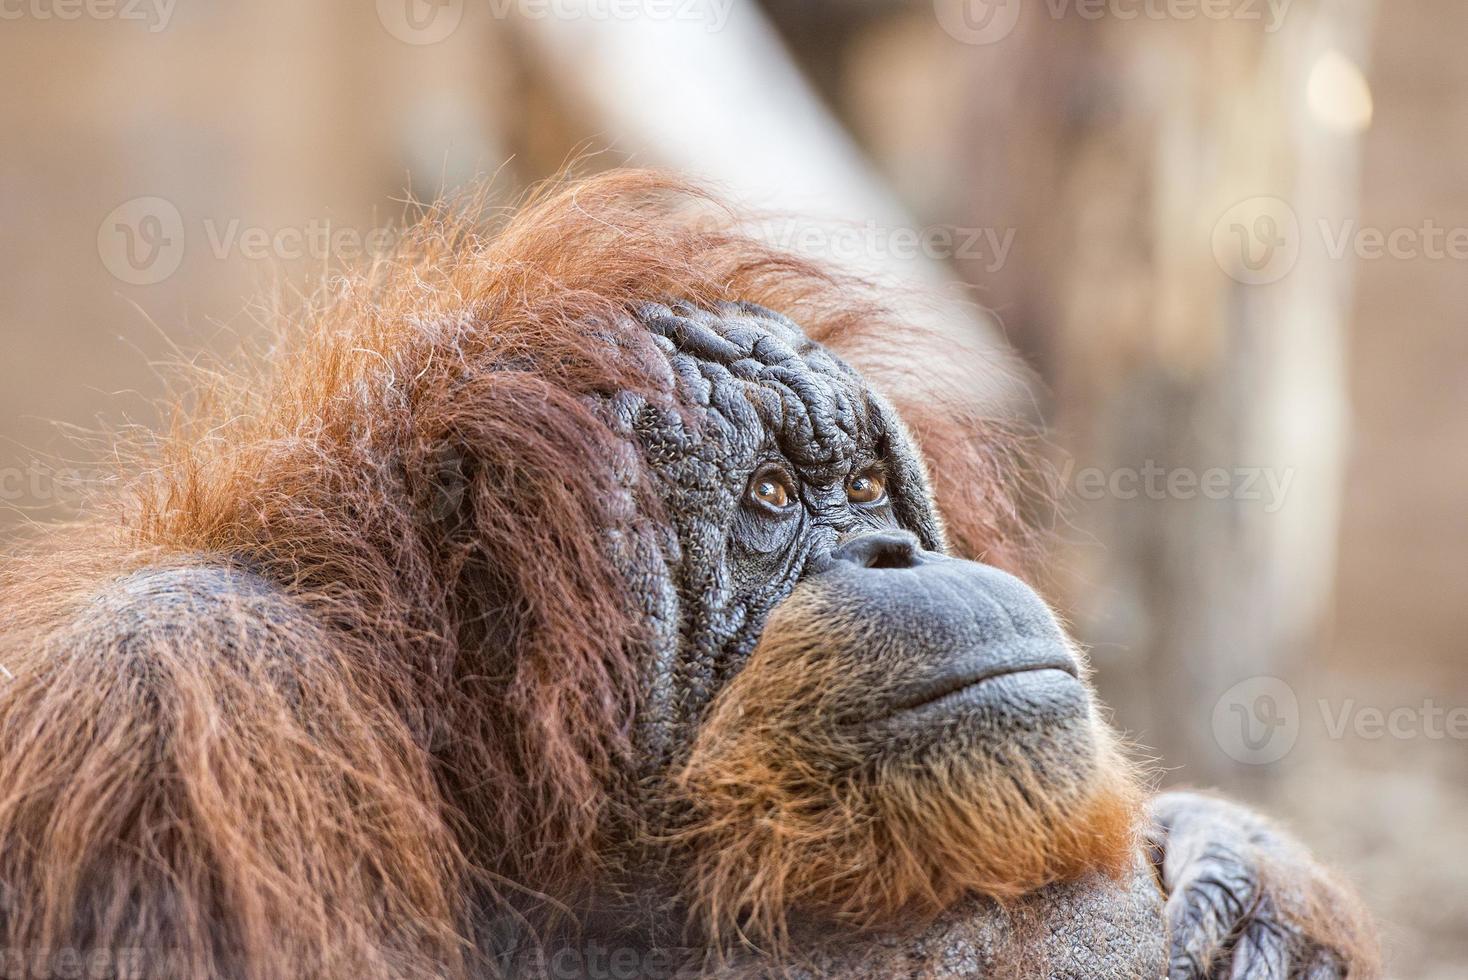 vecchio orang utan scimmia ritratto mentre guardare a voi foto